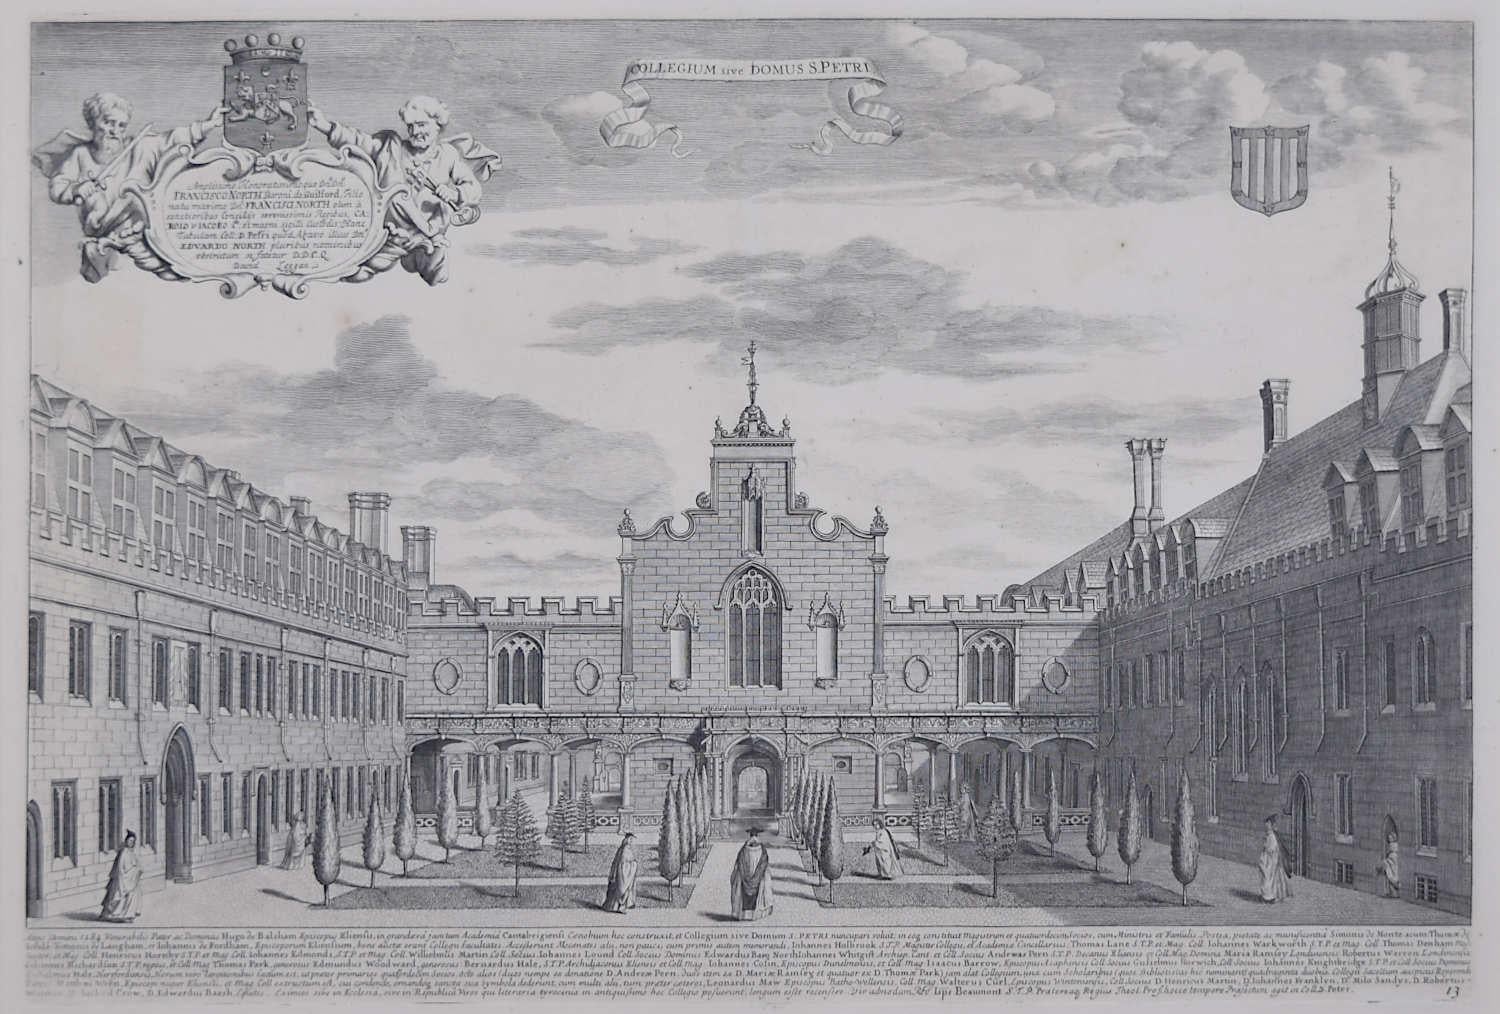 David Loggan (1634-1692)
Peterhouse, Cambridge
Kupferstich, 1690
50.5 x 64cm (gerahmt)

Um unsere anderen Ansichten von Oxford und Cambridge zu sehen, scrollen Sie nach unten zu "Mehr von diesem Verkäufer" und klicken Sie darunter auf "Alle von